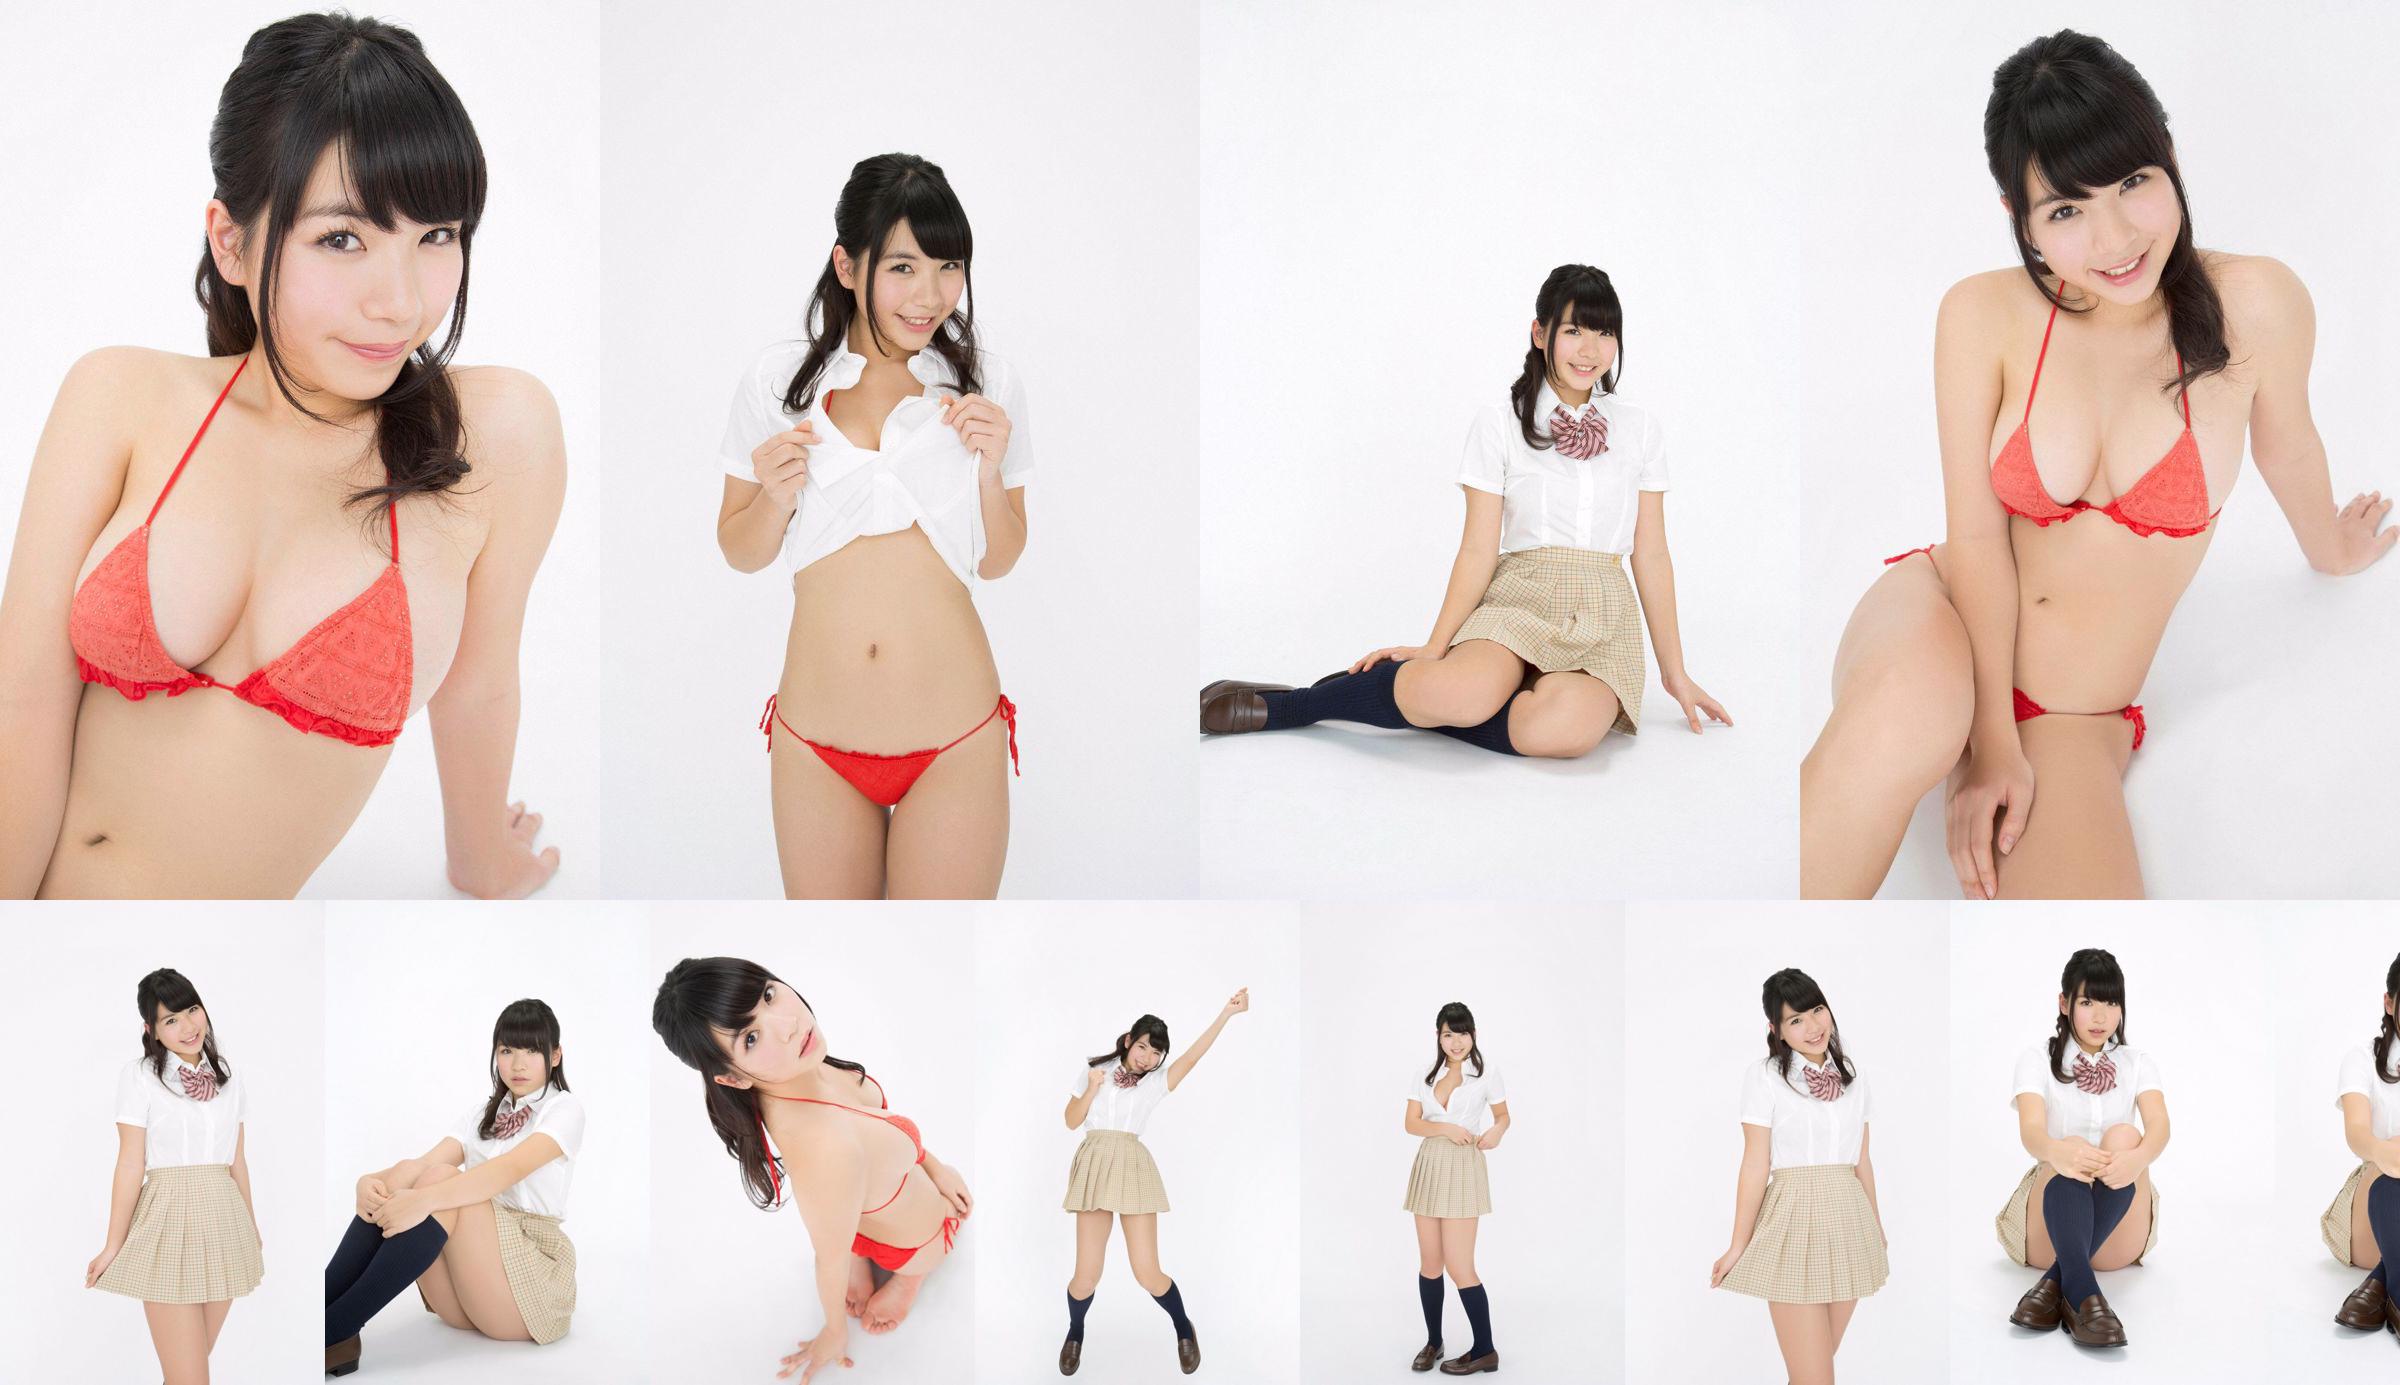 Jun Serizawa / Jun Serizawa "Một nữ sinh trung học năng động, lùn nhất Nhật Bản グ ラ ド ル nhập học! No.7eedbb Trang 1